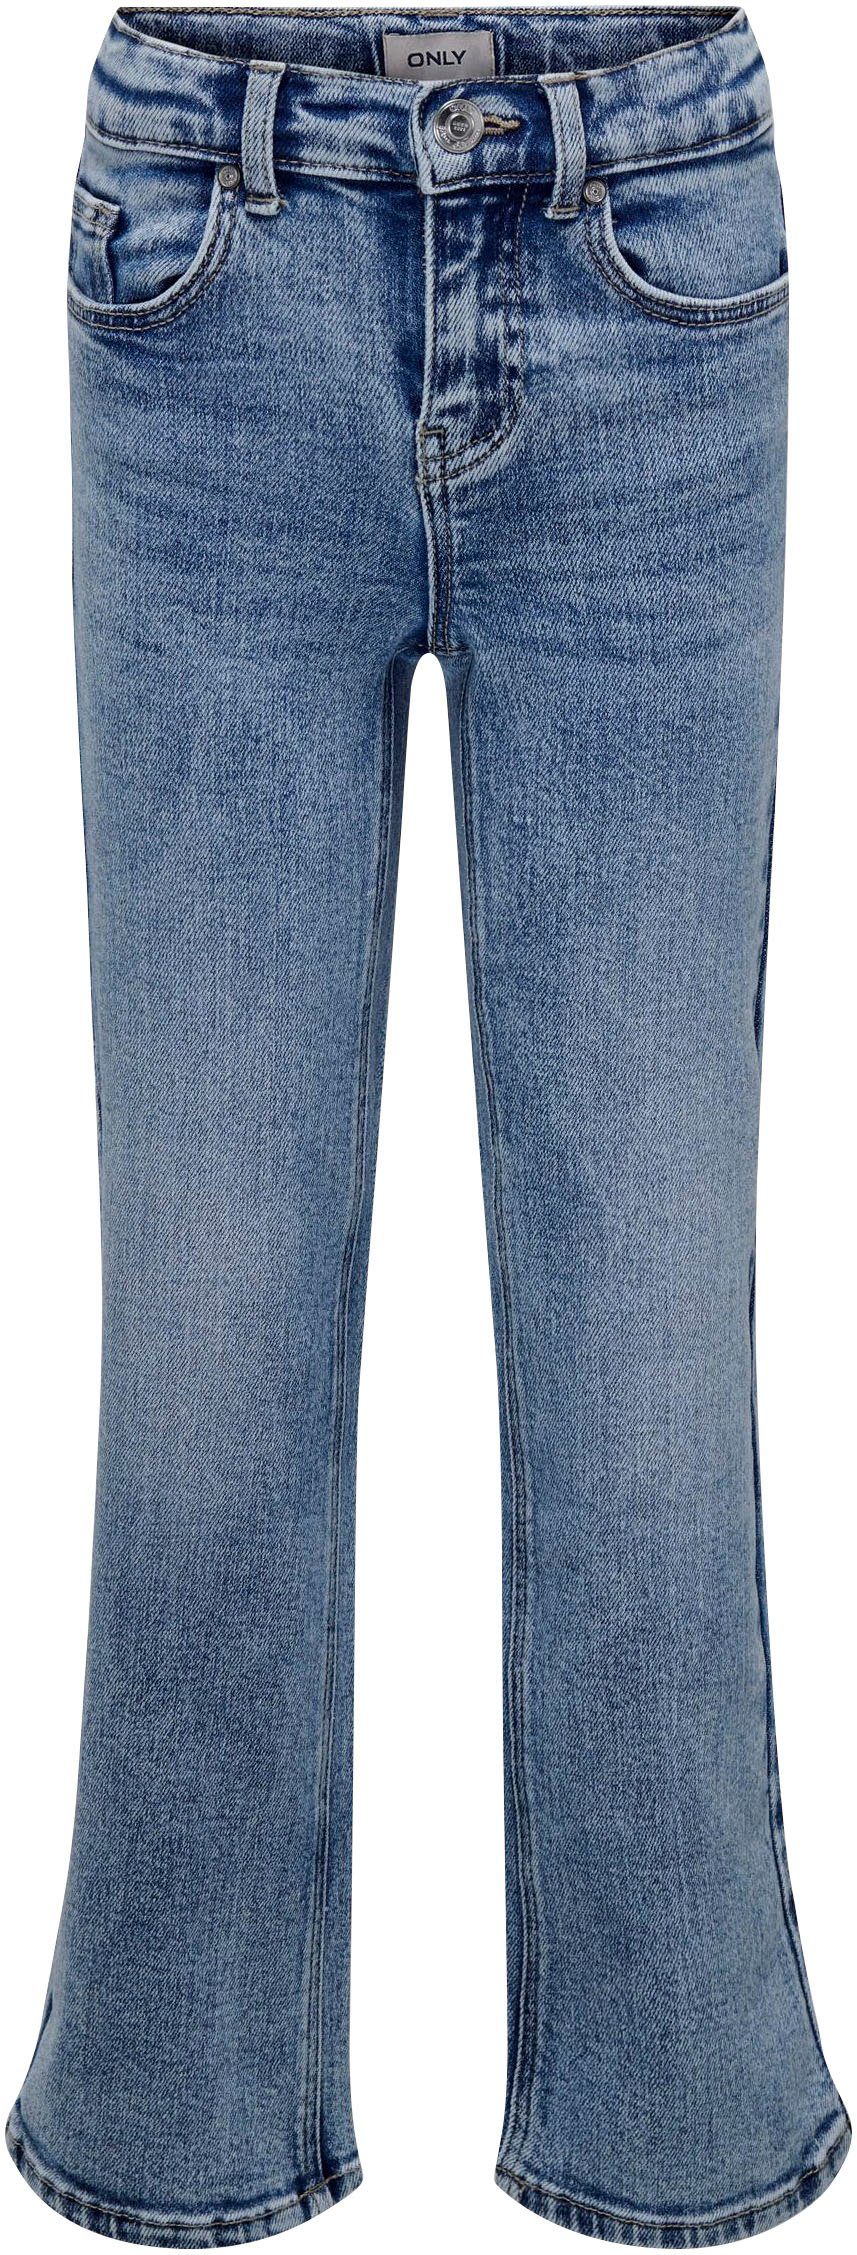 DEST LEG WIDE DN KOGJUICY ONLY 5-Pocket-Jeans KIDS